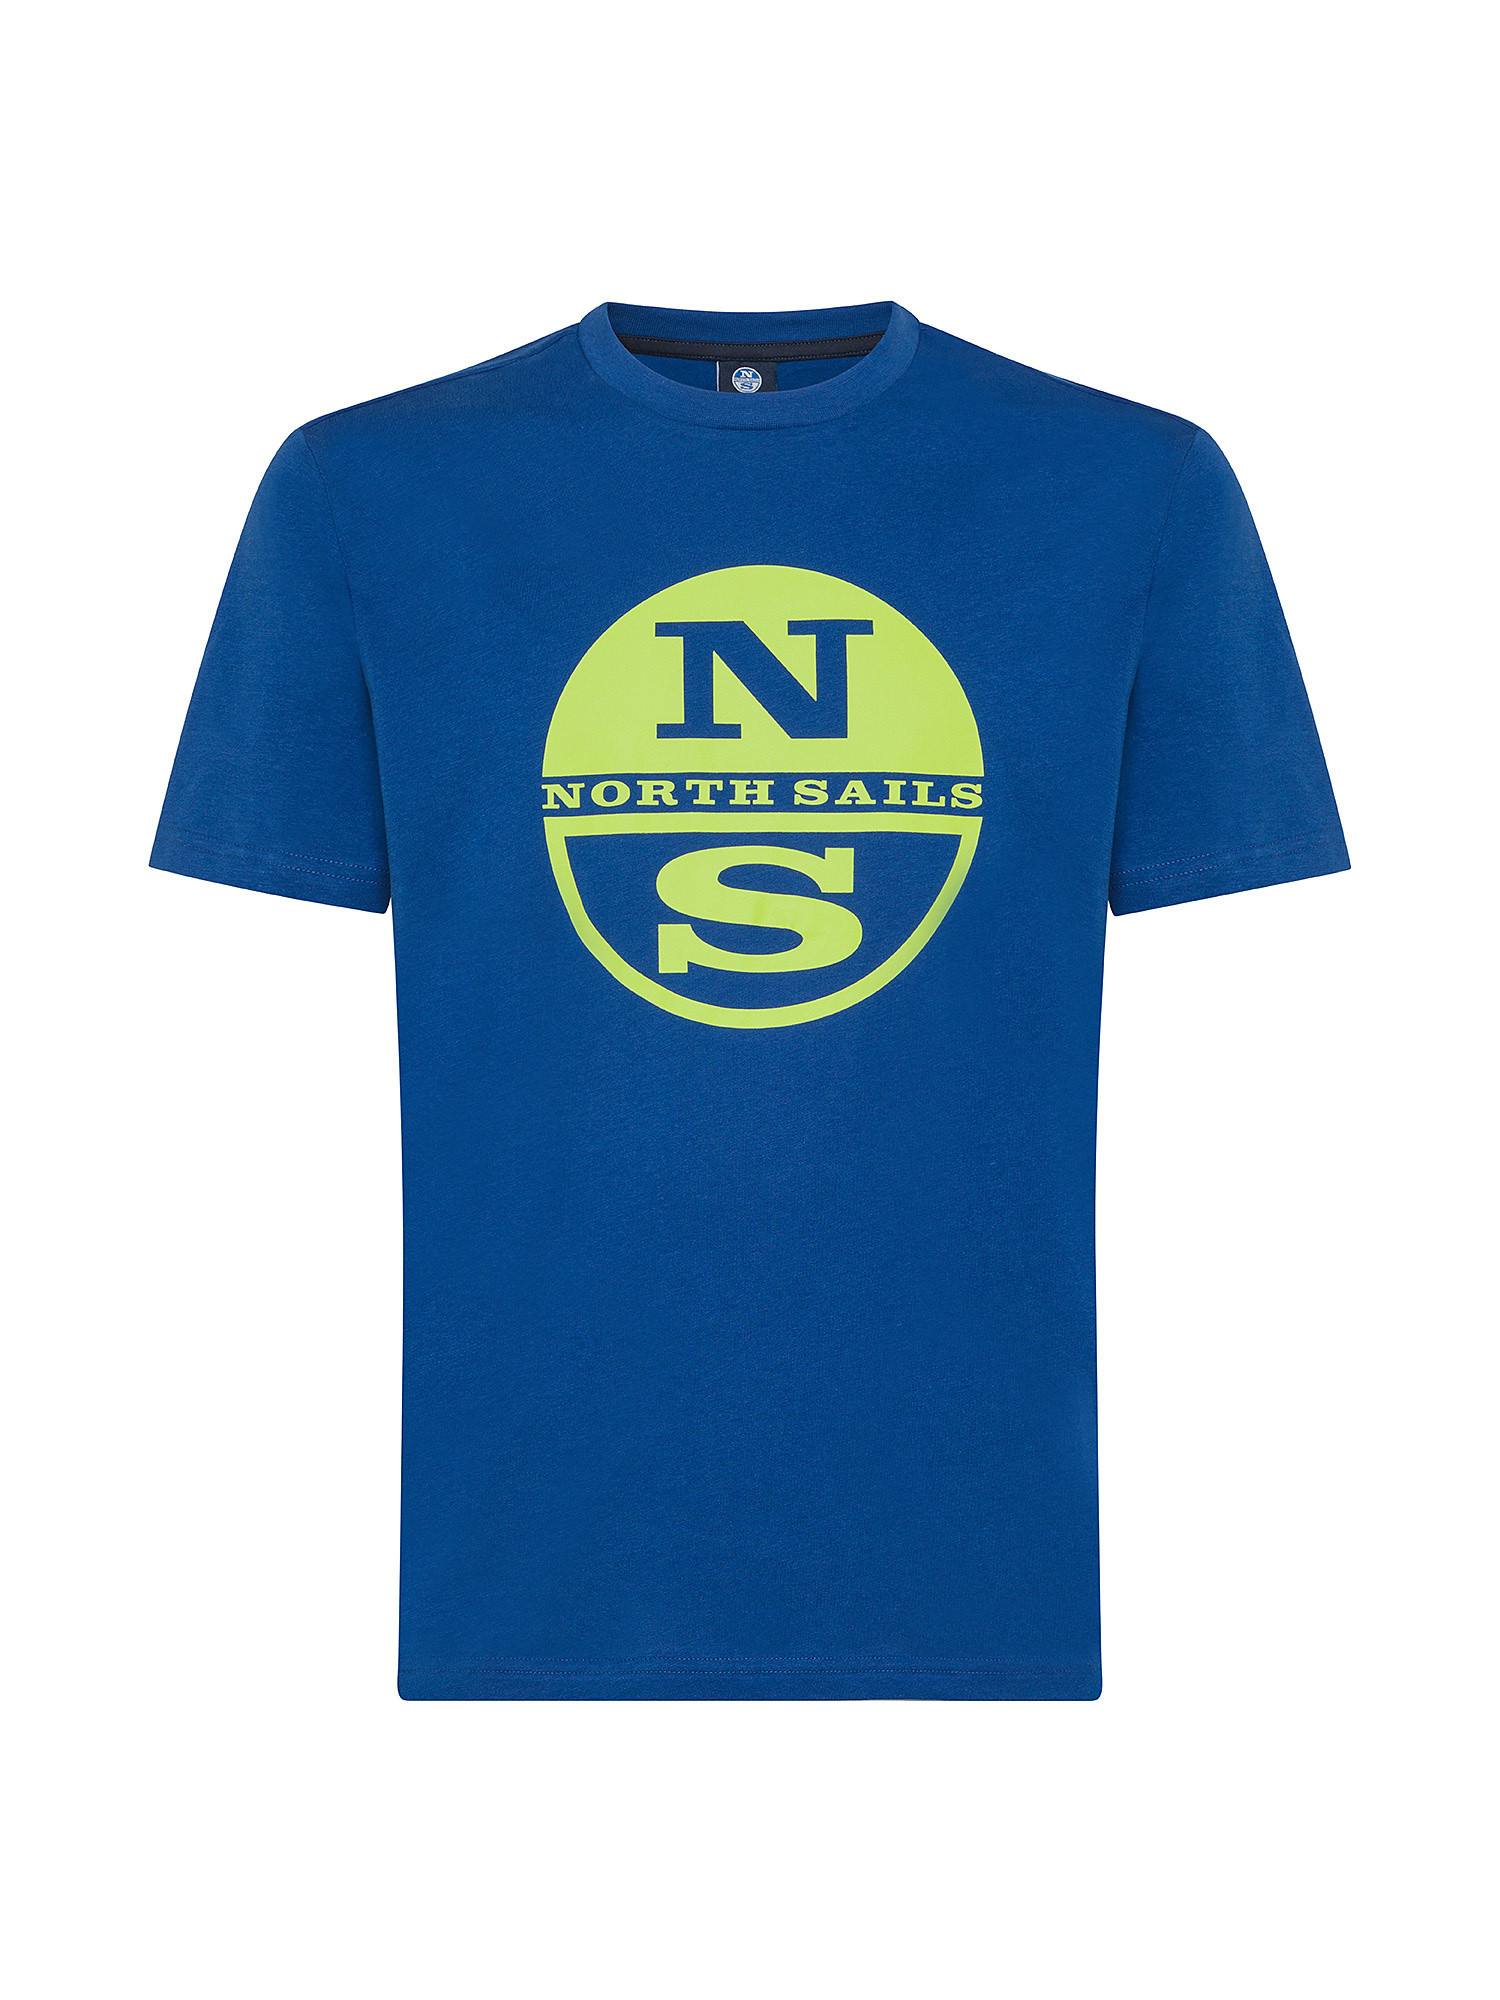 North sails - T-shirt in jersey di cotone organico con maxi logo stampato, Blu elettrico, large image number 0